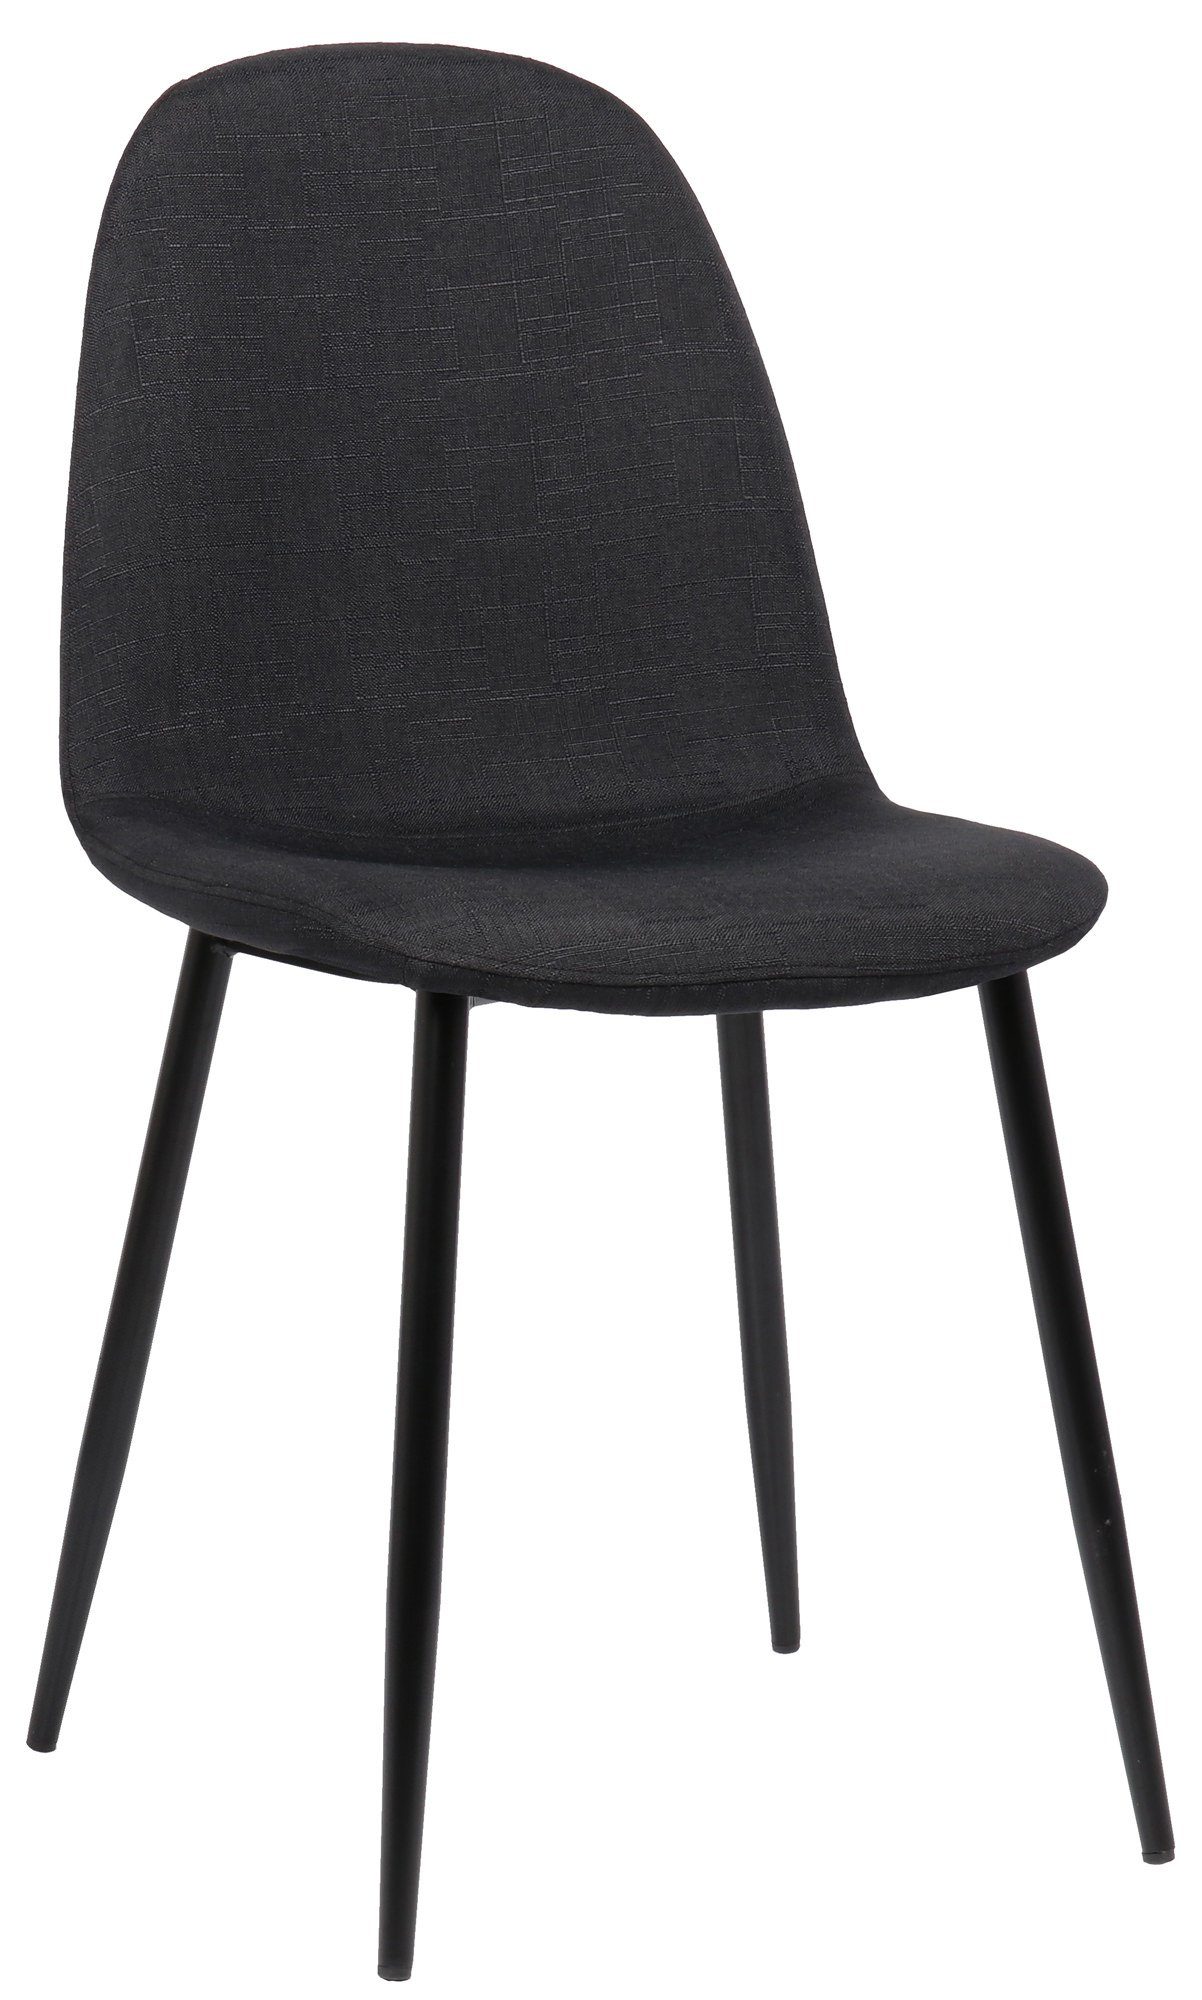 TPFLiving Esszimmerstuhl Naples mit hochwertig gepolsterter Sitzfläche - Konferenzstuhl (Küchenstuhl - Esstischstuhl - Wohnzimmerstuhl - Polsterstuhl), Gestell: Metall schwarz - Sitzfläche: Stoff schwarz